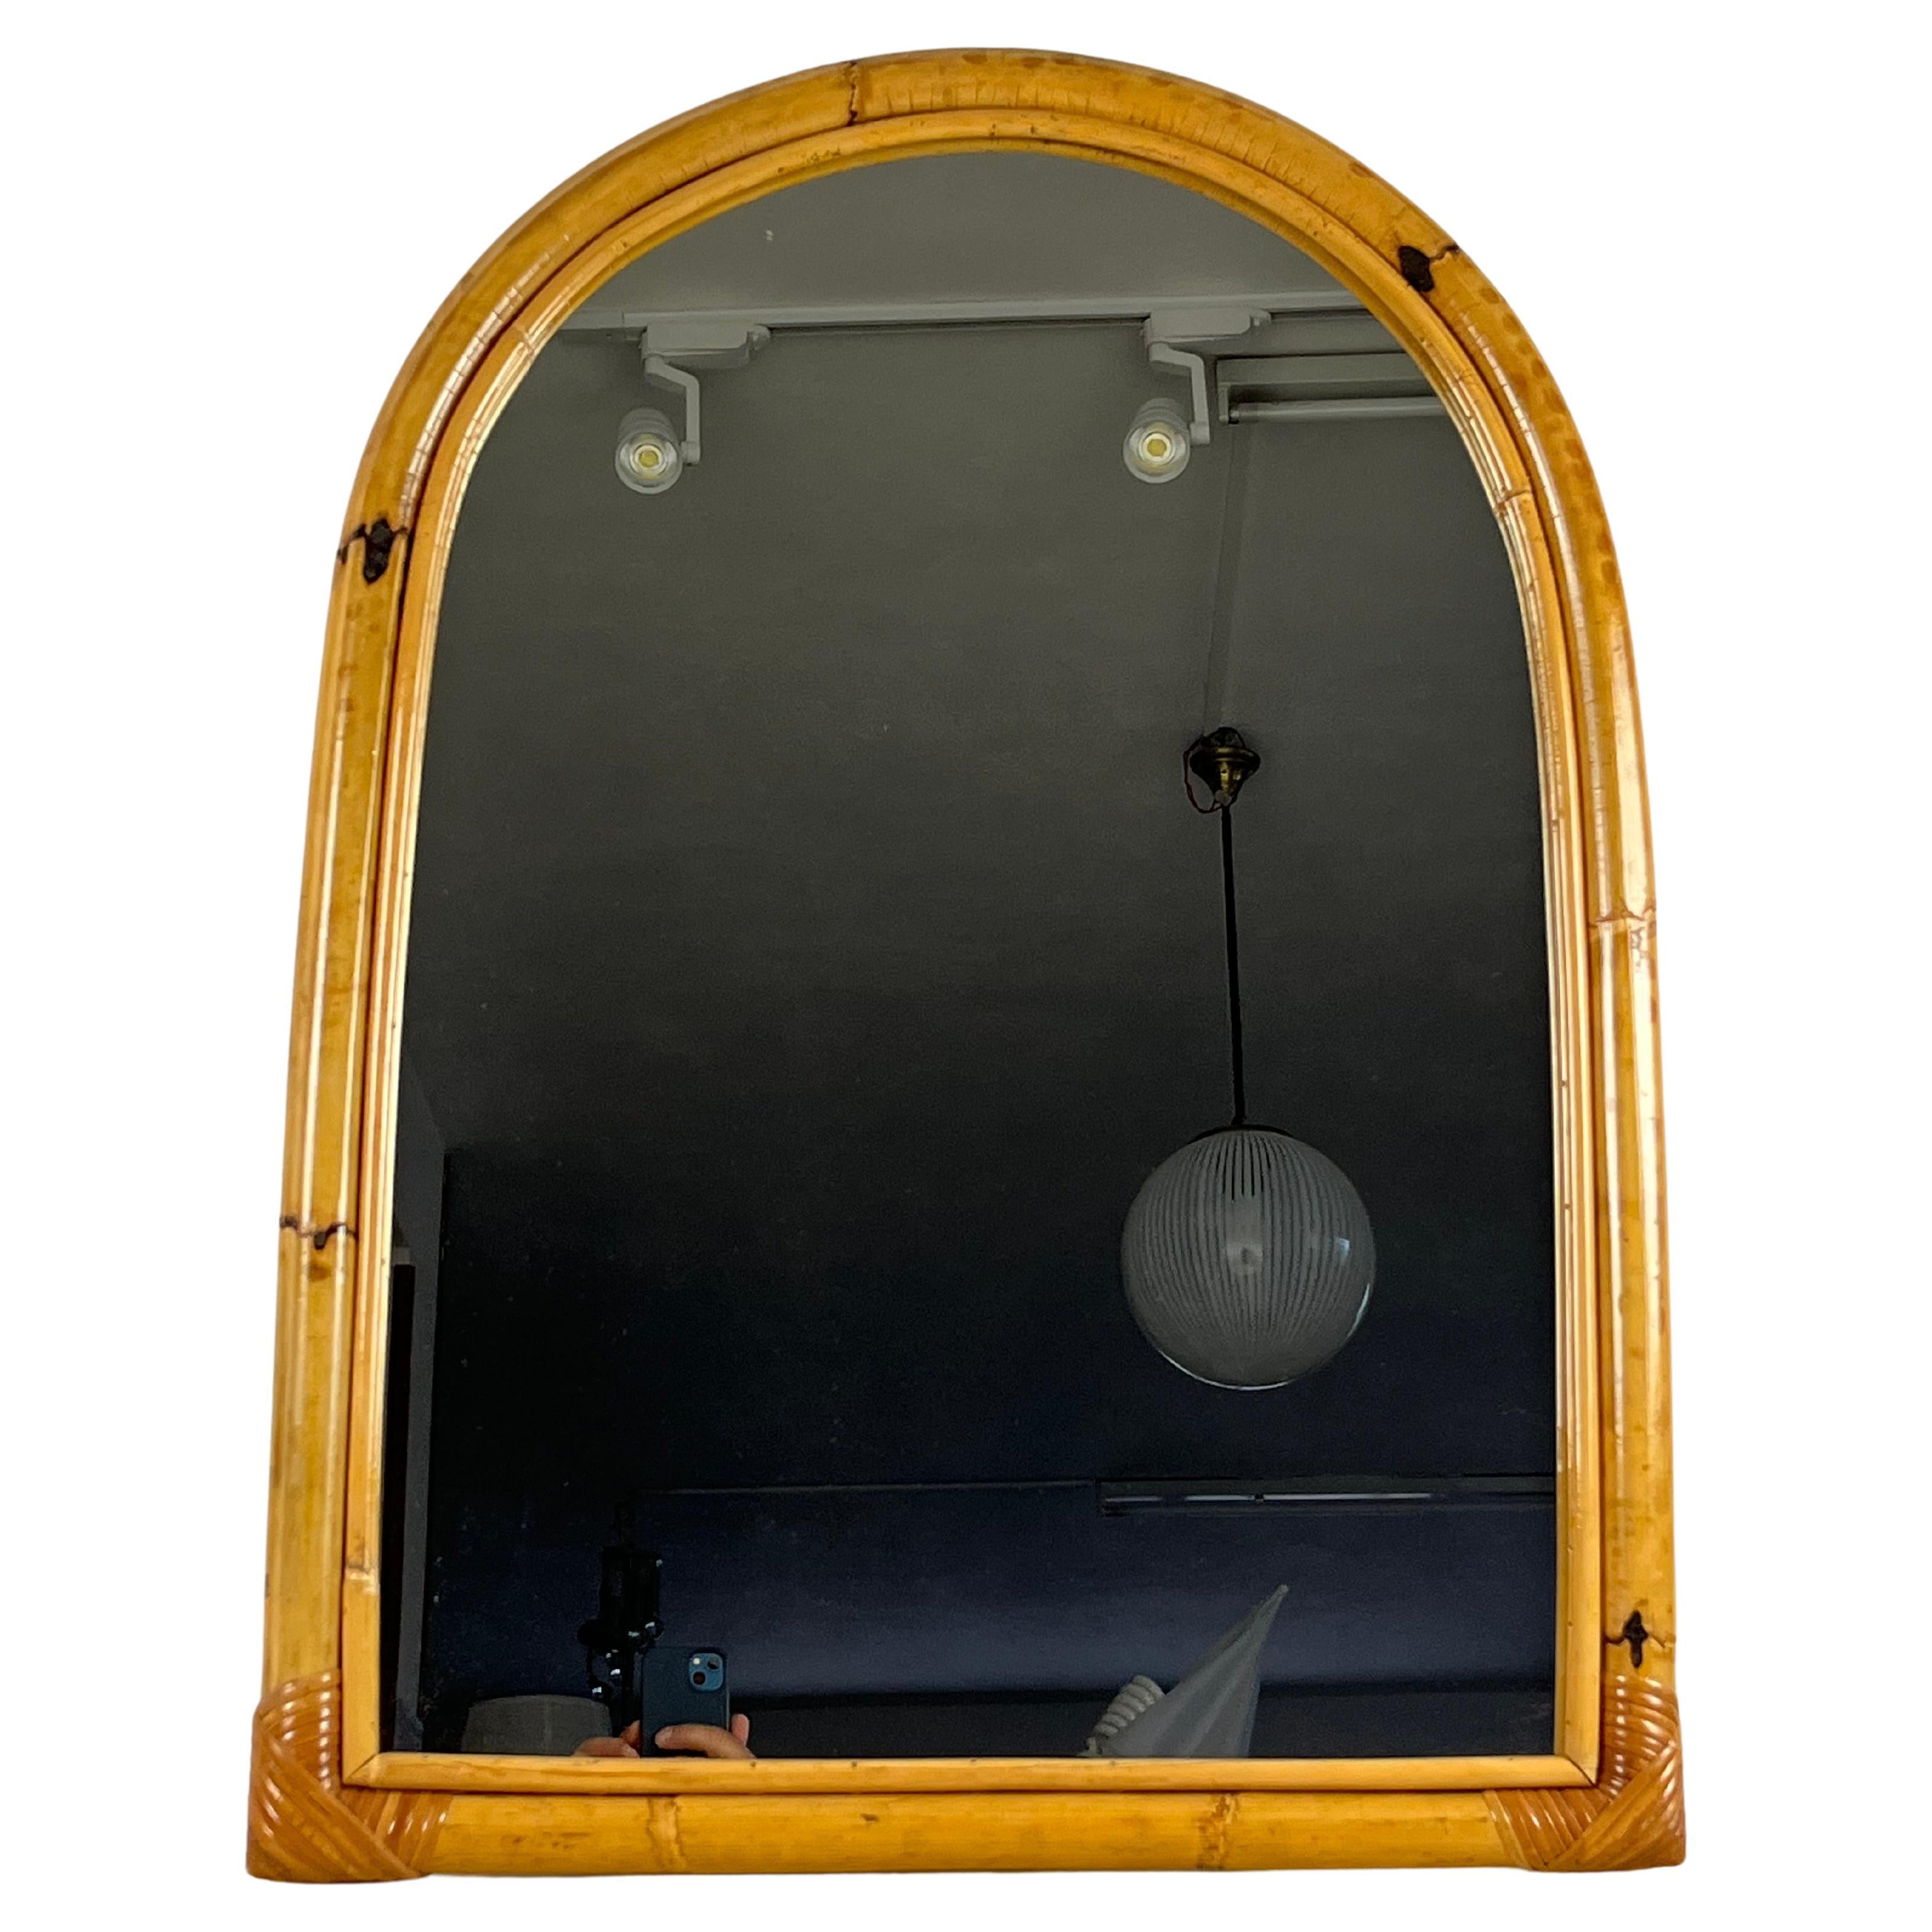 Gewölbter Spiegel aus Bambus, Italien, 1970er Jahre
Gekauft von meinen Großeltern, als sie 1971 das Ferienhaus am Meer einrichteten.
Es ist in ausgezeichnetem Zustand, kleine Gebrauchsspuren.